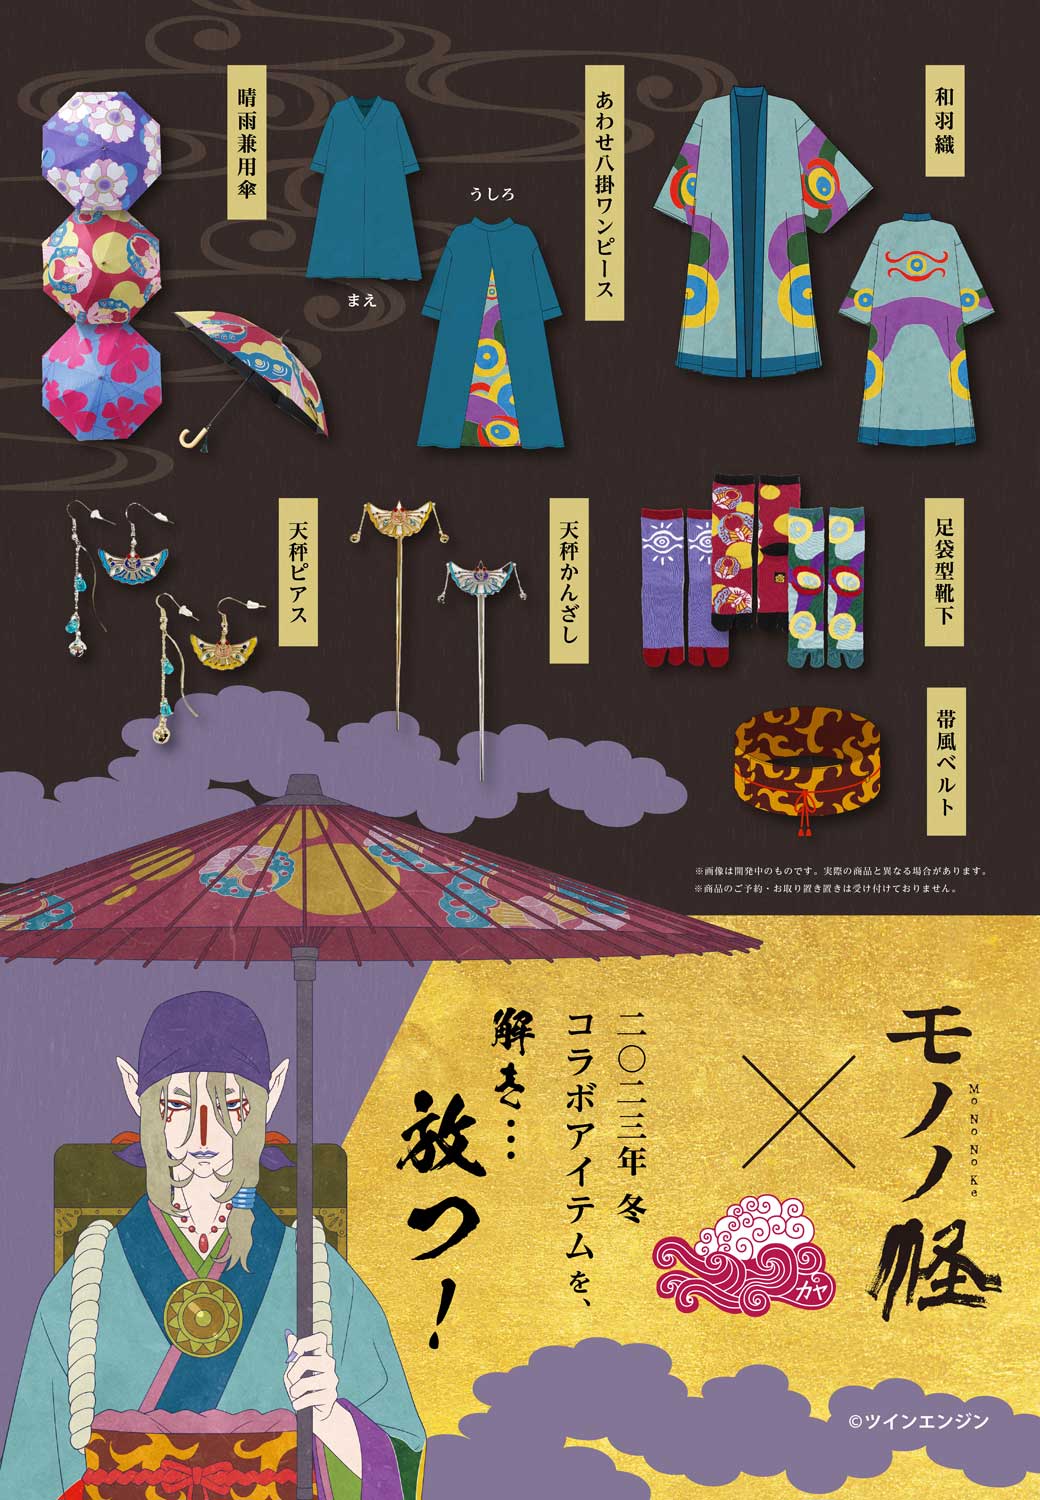 モノノ怪 × 倭物やカヤ “薬売り”イメージのコラボアパレル 12月発売!